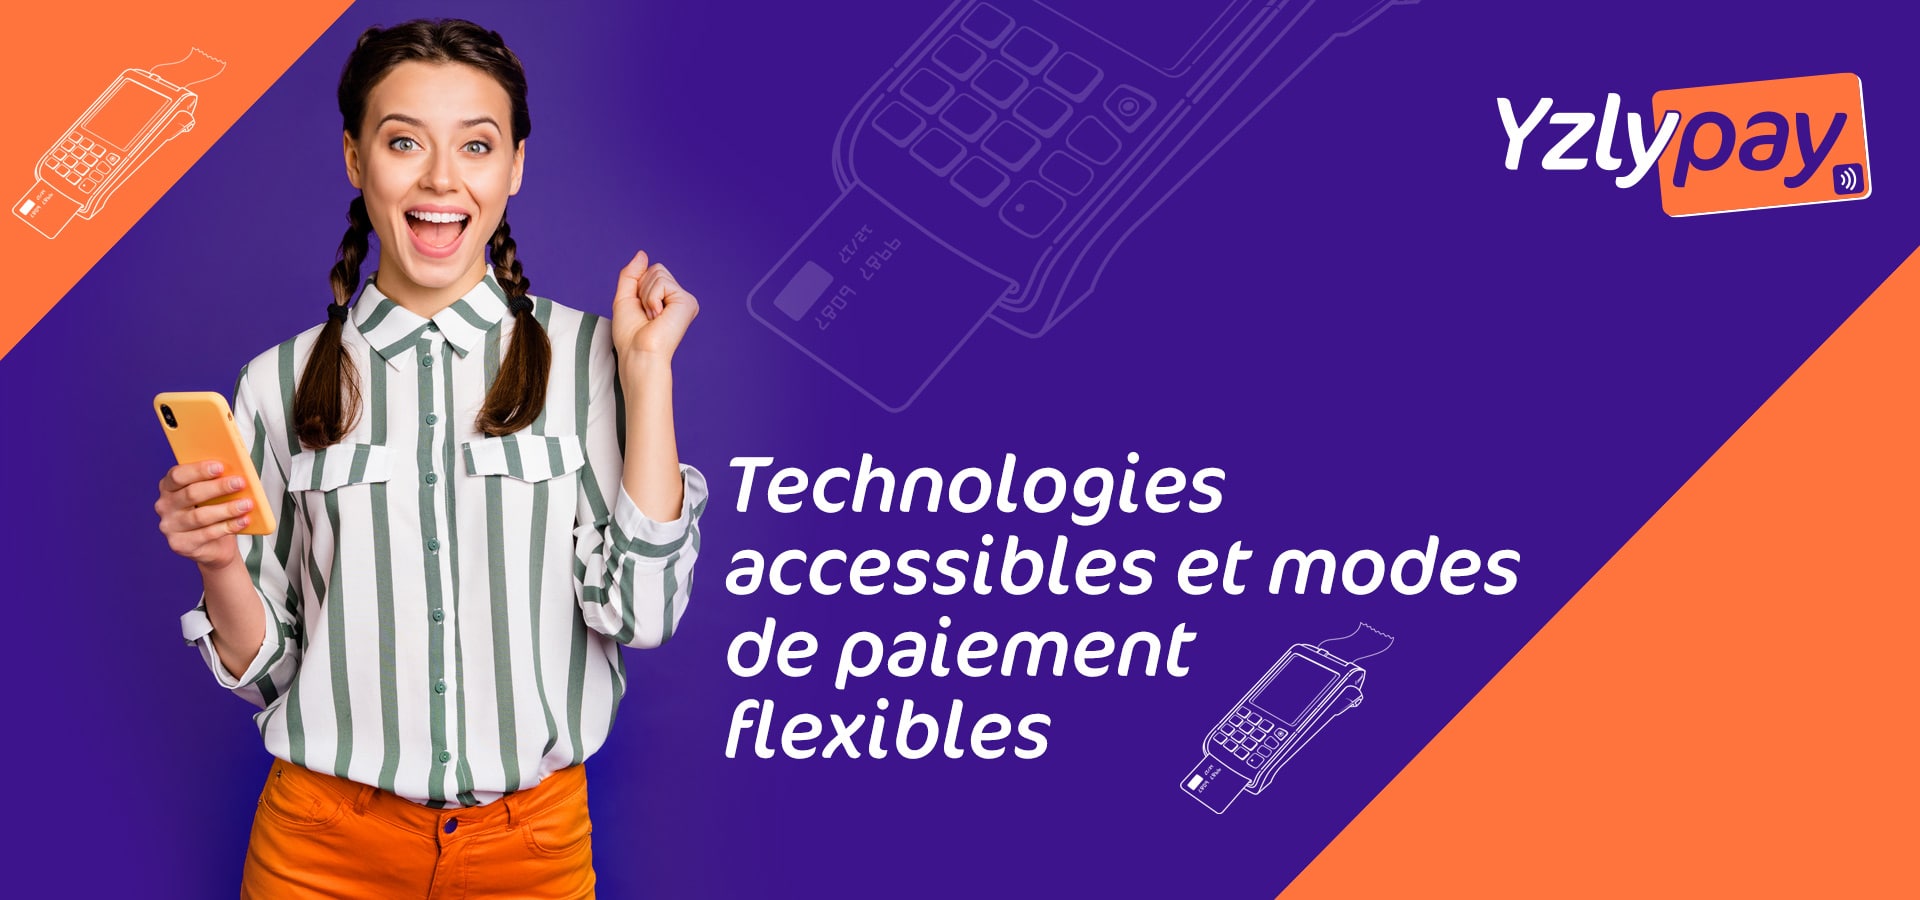 yzly-pay-technologies-accessibles-et-modes-de-paiement-flexibles